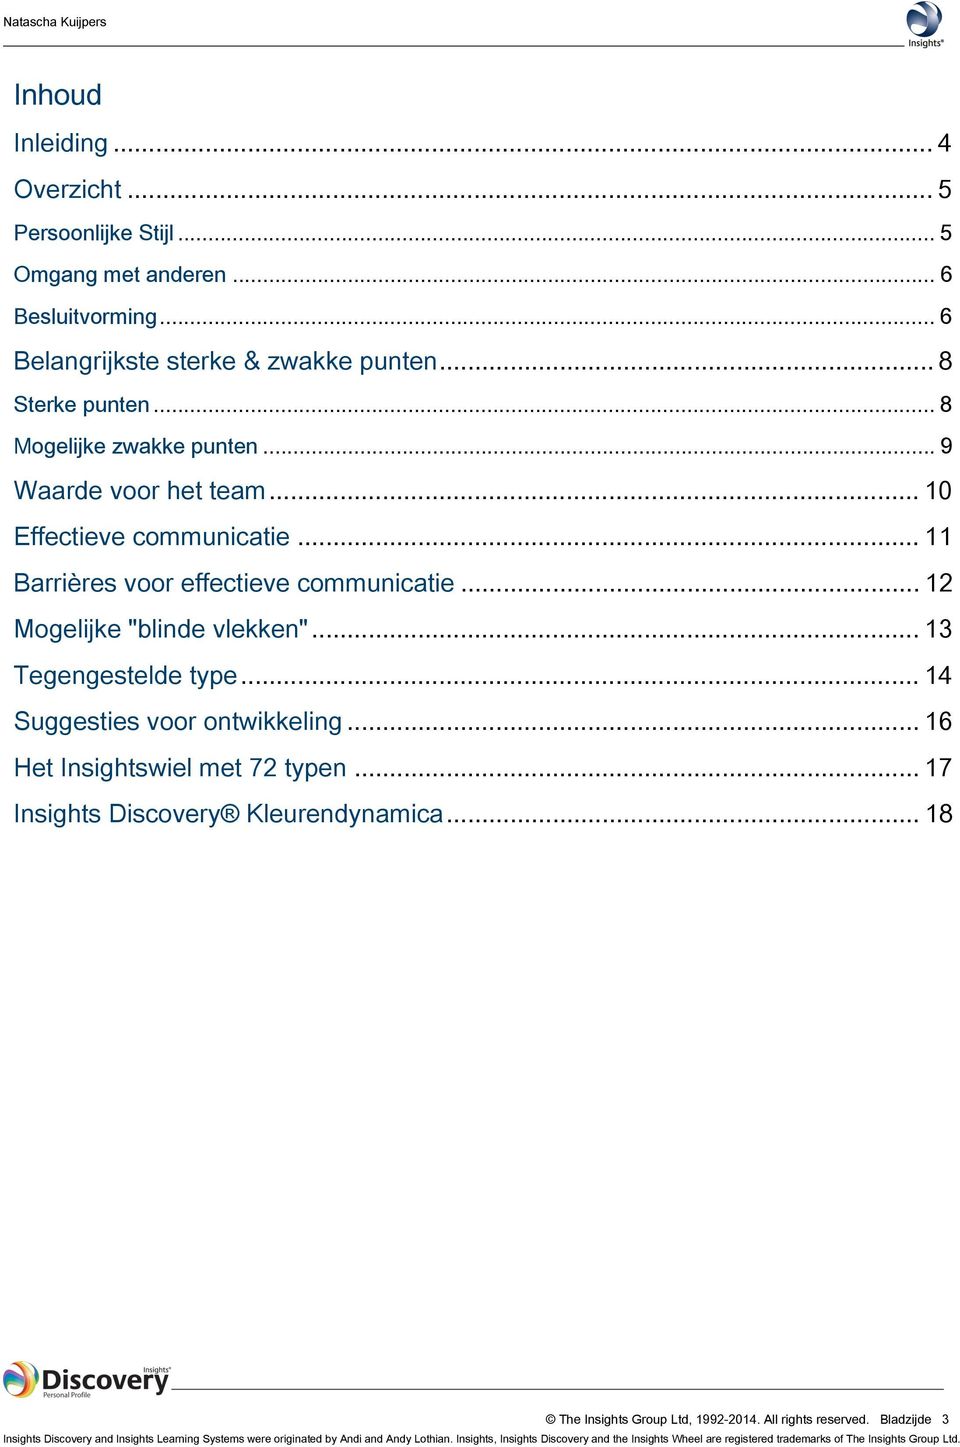 .. 13 Tegengestelde type... 14 Suggesties voor ontwikkeling... 16 Het Insightswiel met 72 typen... 17 Insights Discovery Kleurendynamica... 18 The Insights Group Ltd, 1992-2014.